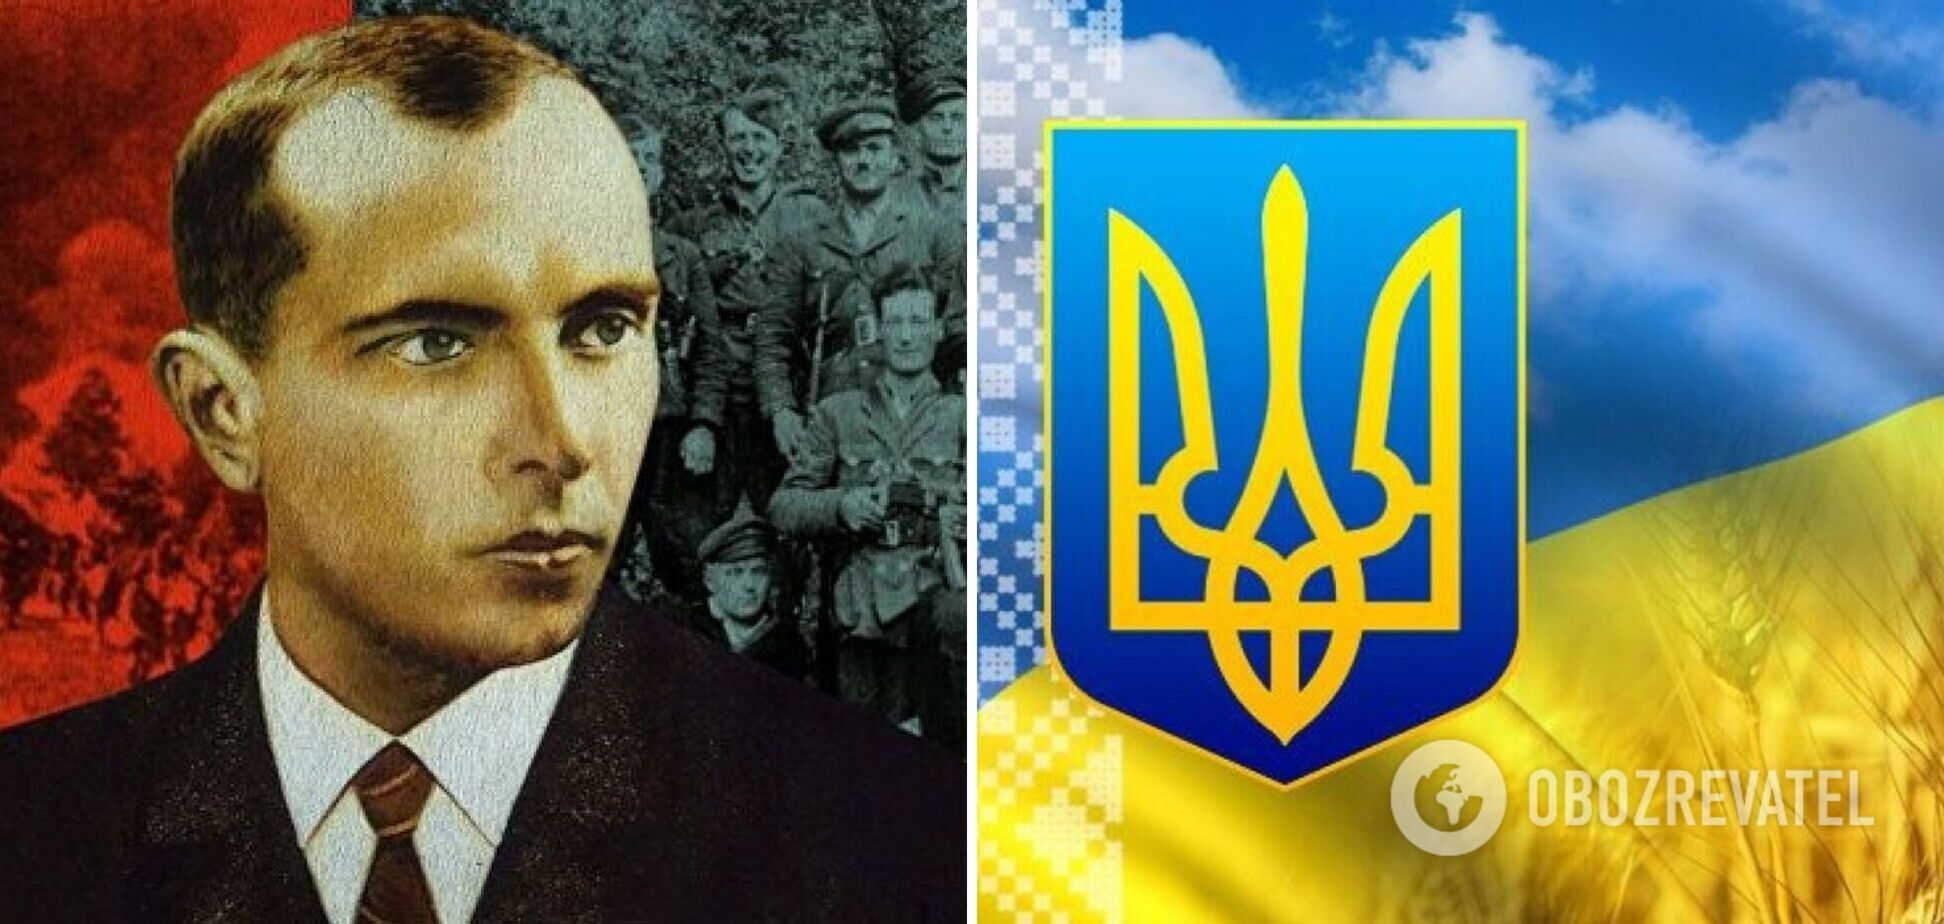 Сегодня один говорит: Слава Украине! А миллионы отзываются: Героям слава!